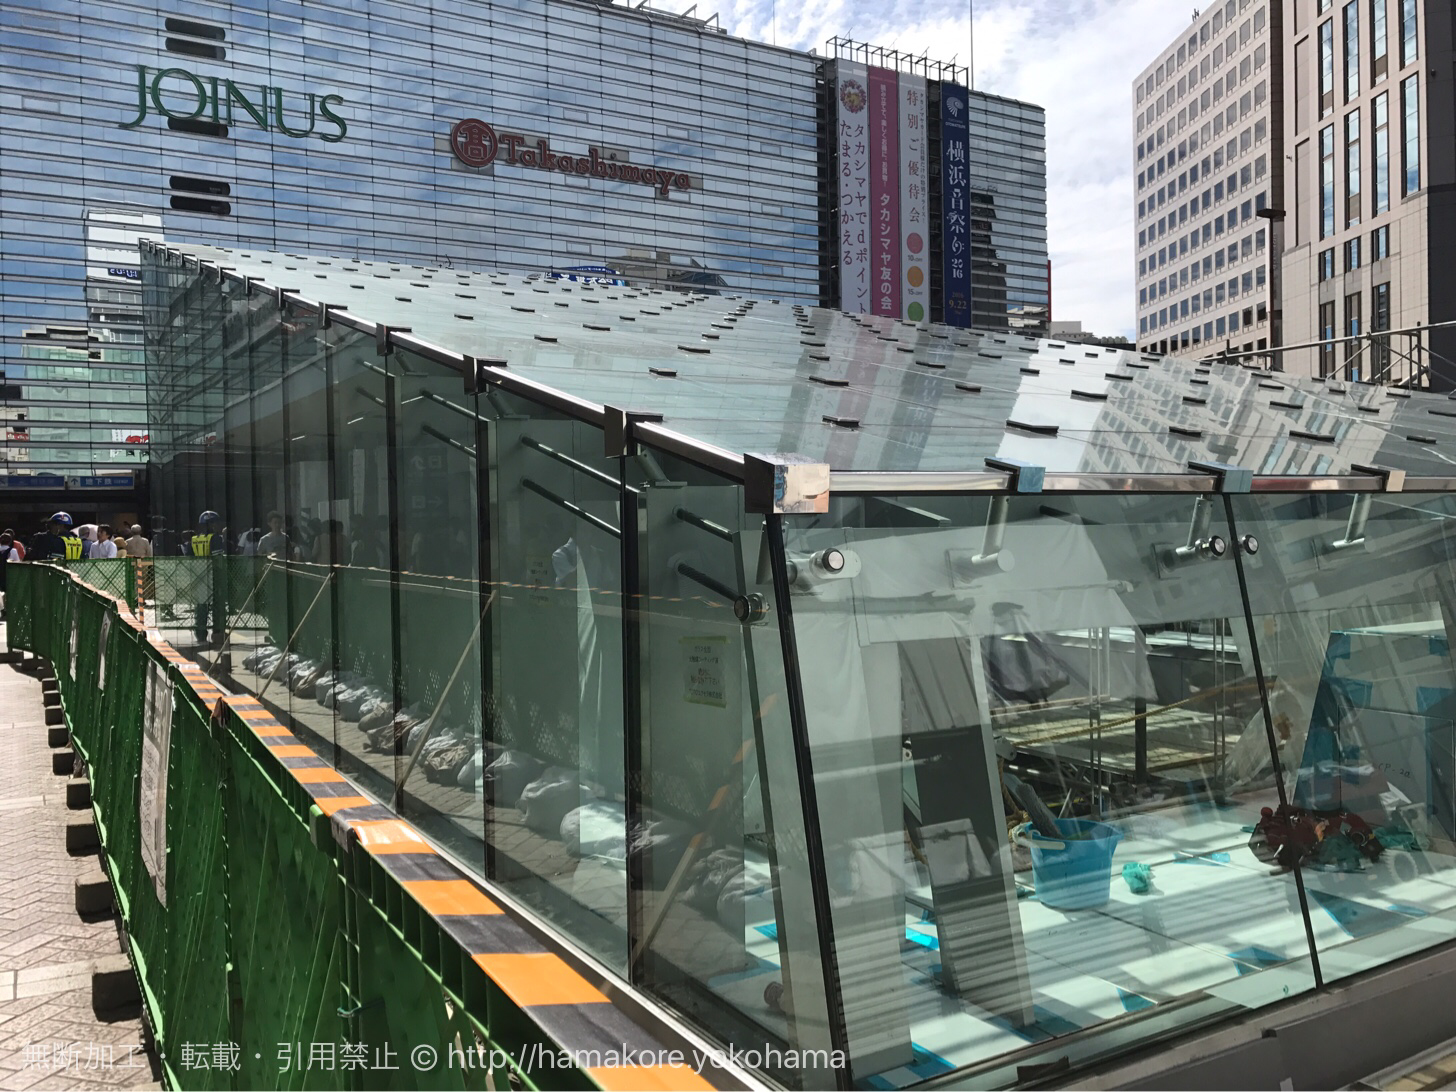 横浜駅西口 バスターミナル前 交番横 にガラスの建物が出現 ジョイナス地下に繋がるのか はまこれ横浜